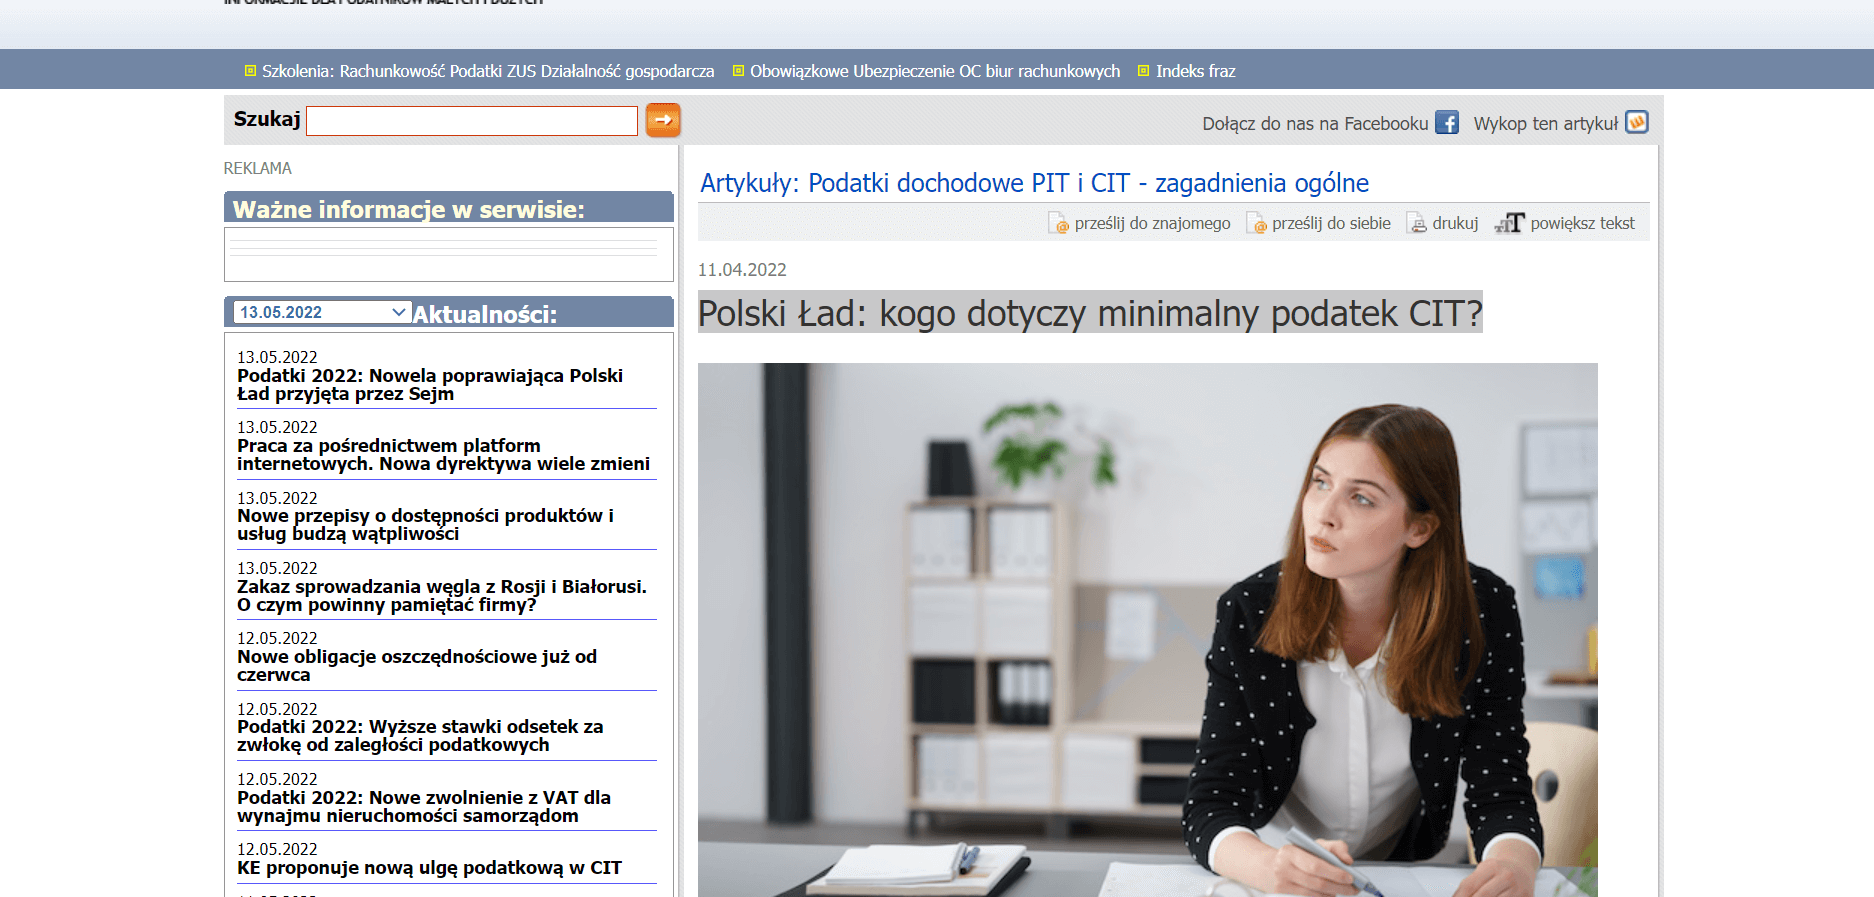 Polski Ład: kogo dotyczy minimalny podatek CIT?